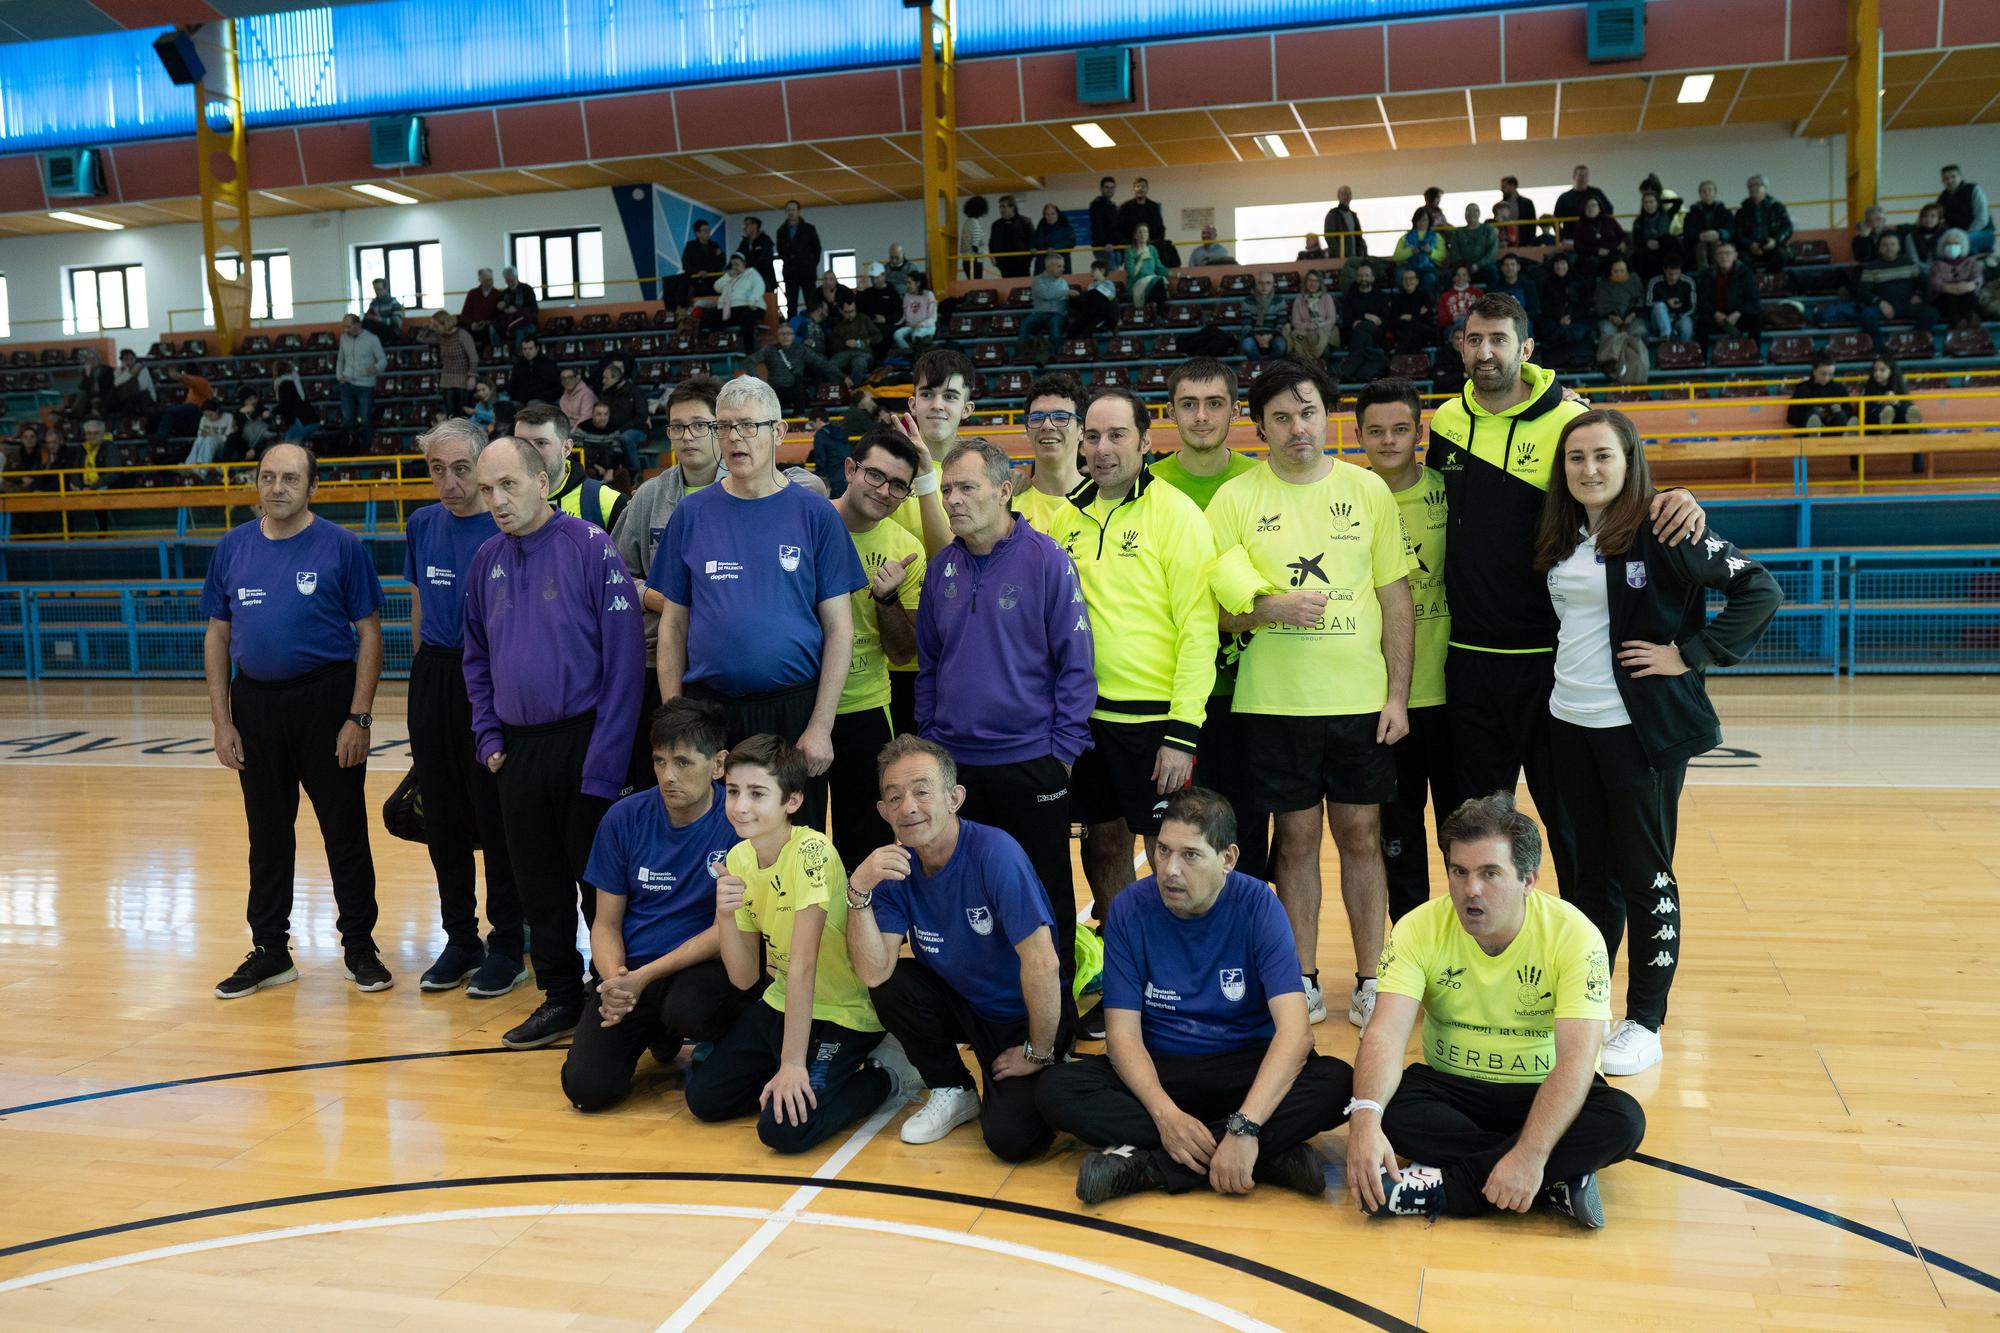 GALERÍA | El II Torneo de Balonmano Inclusivo, en imágenes